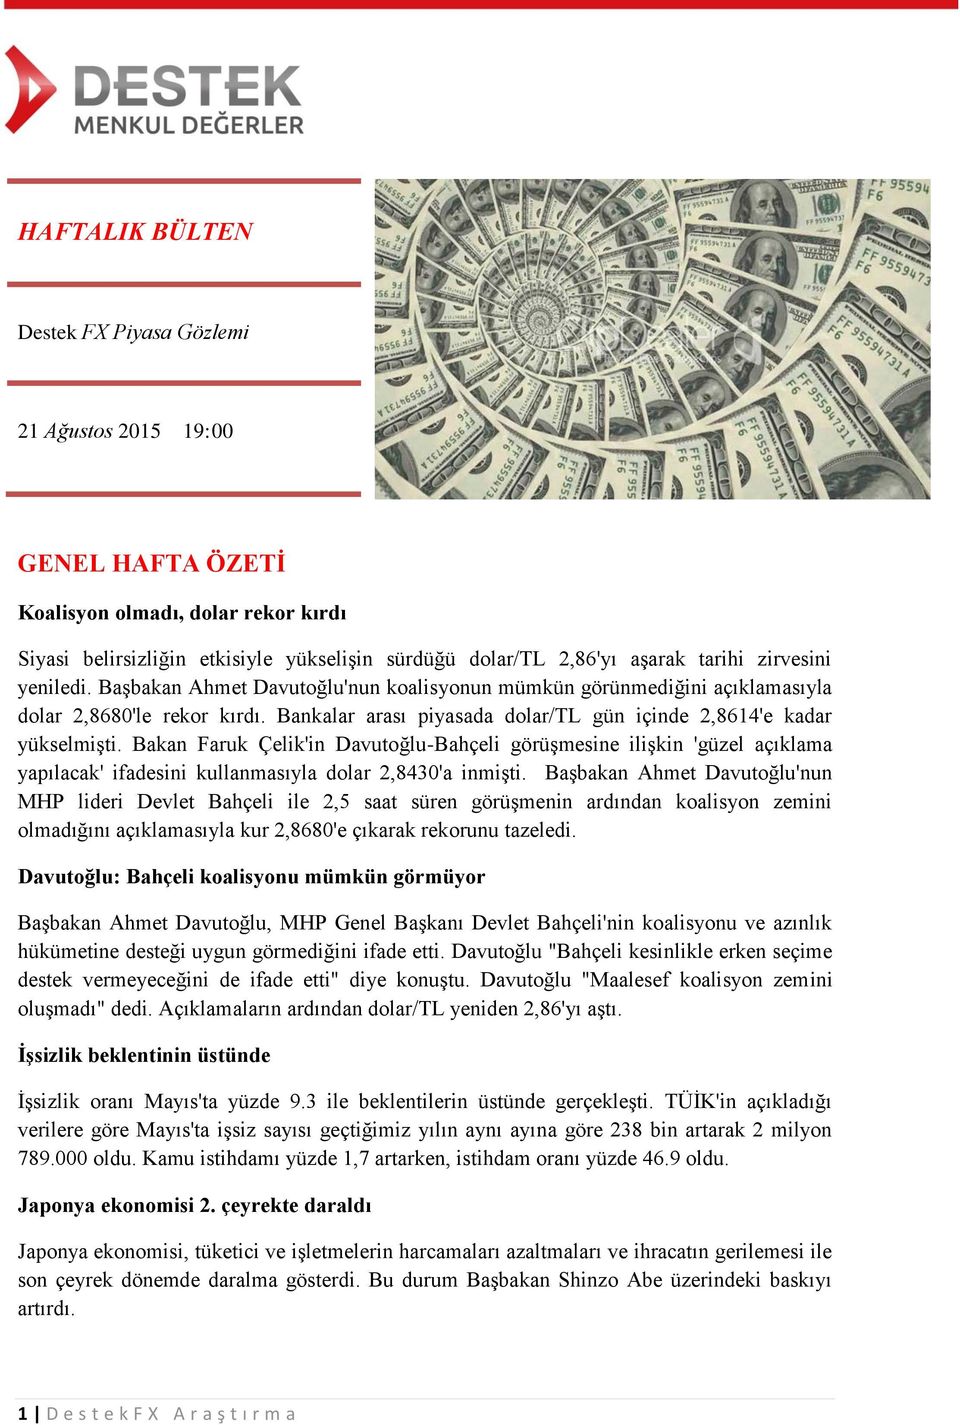 Bakan Faruk Çelik'in Davutoğlu-Bahçeli görüşmesine ilişkin 'güzel açıklama yapılacak' ifadesini kullanmasıyla dolar 2,8430'a inmişti.